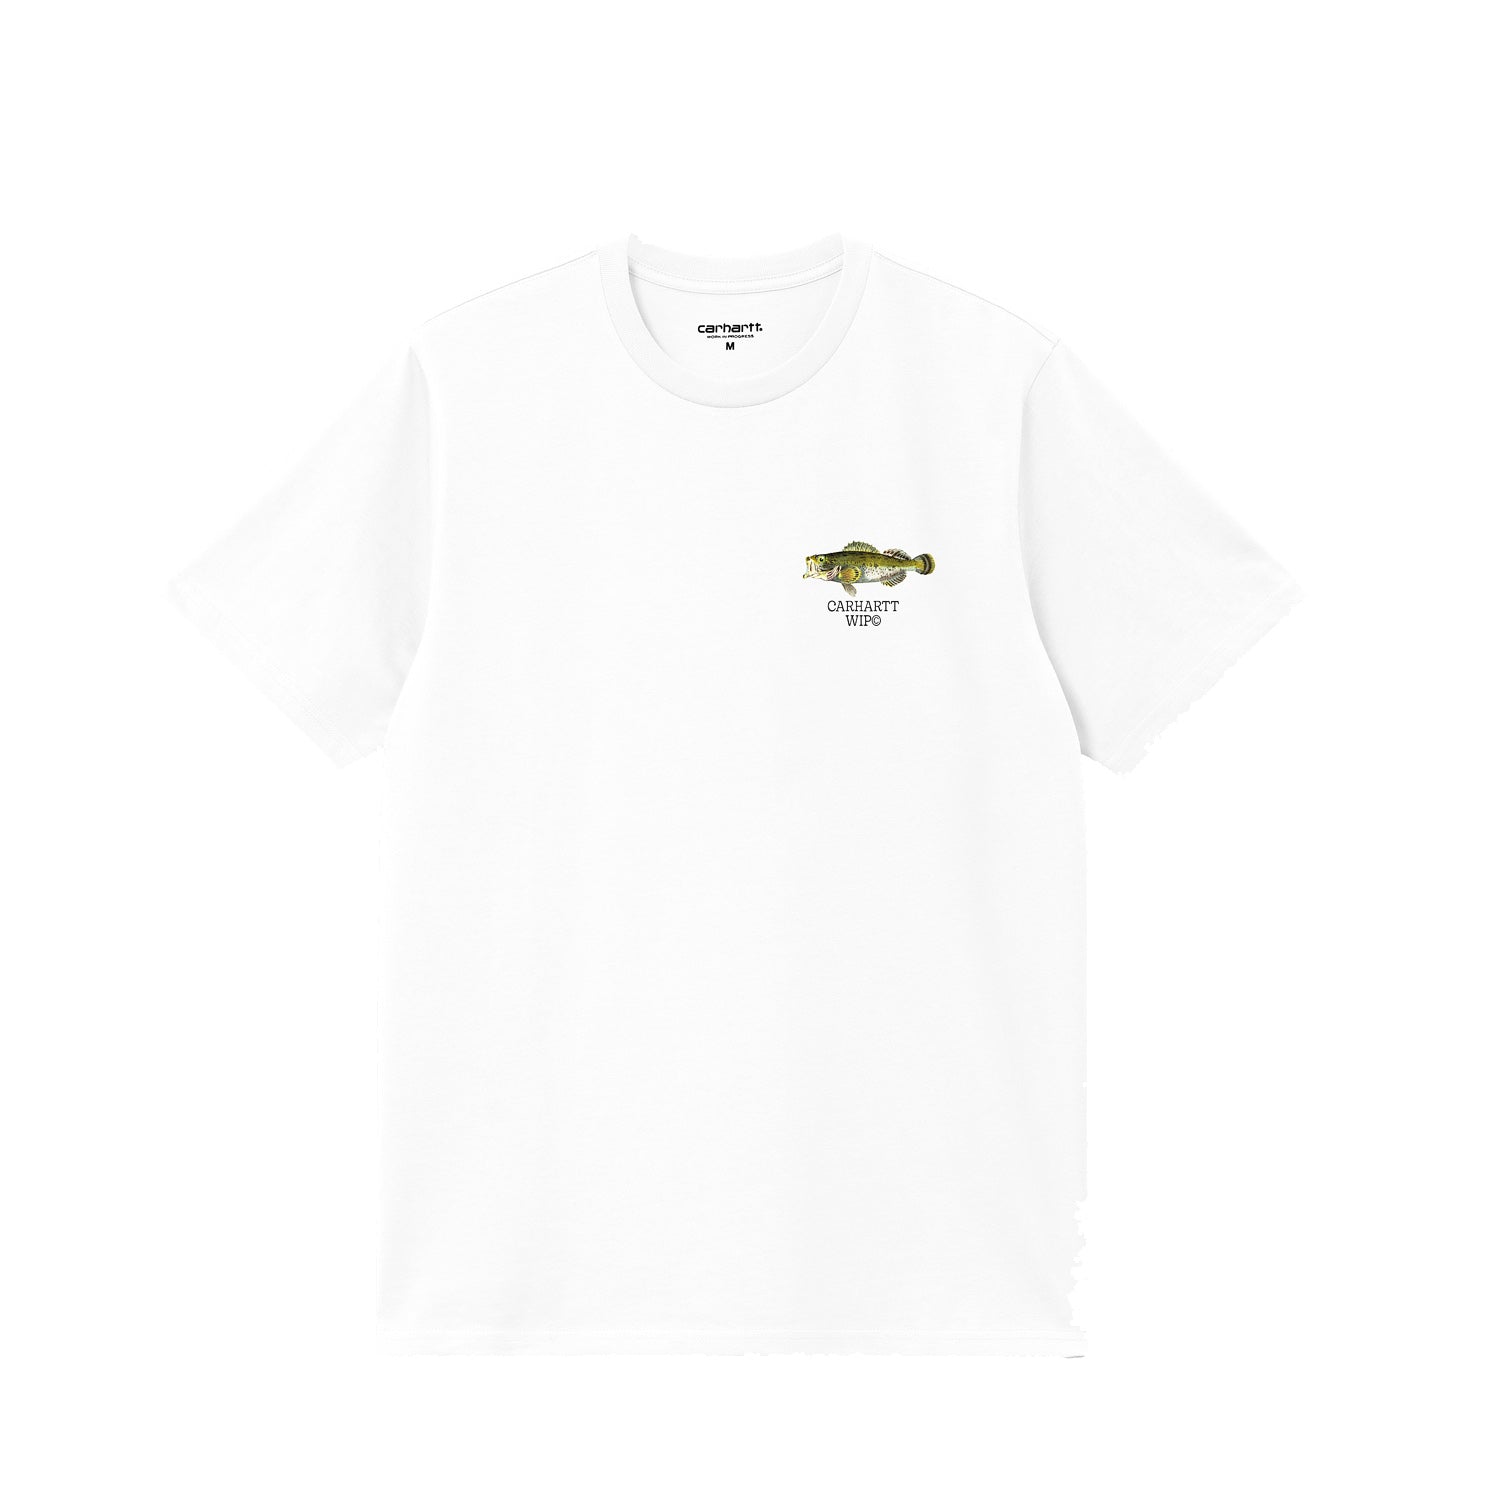 Carhartt WIP S/S Fish T-Shirt - White - M - Men